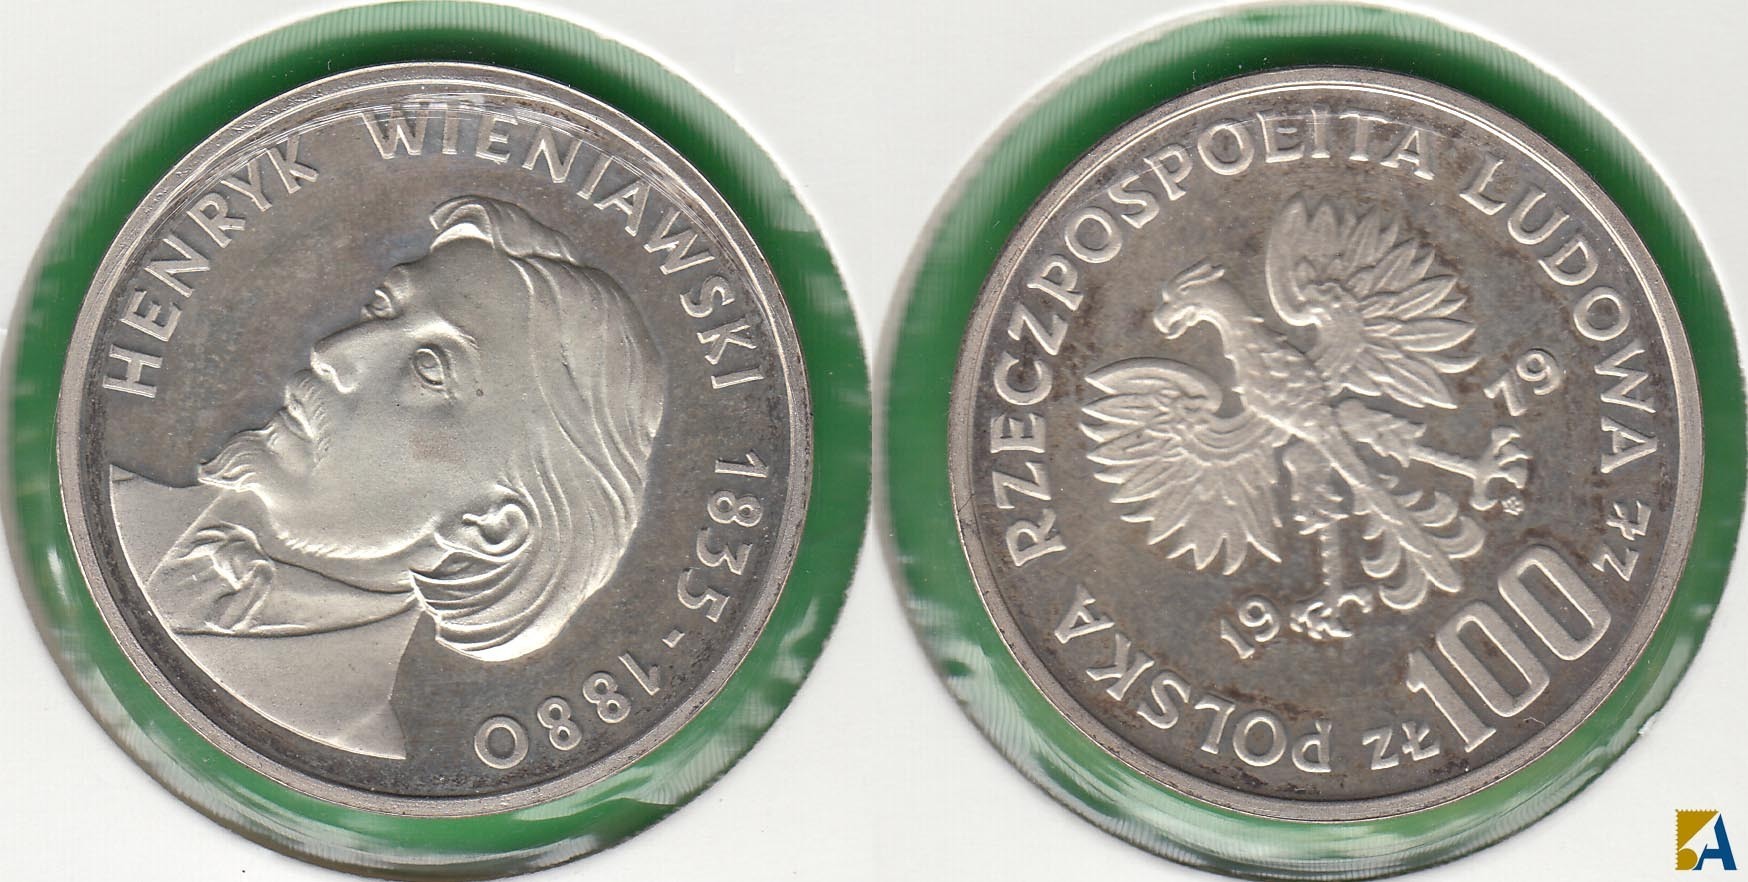 POLONIA - POLSKA. 100 ZLOTYCH DE 1979. PLATA 0.625.